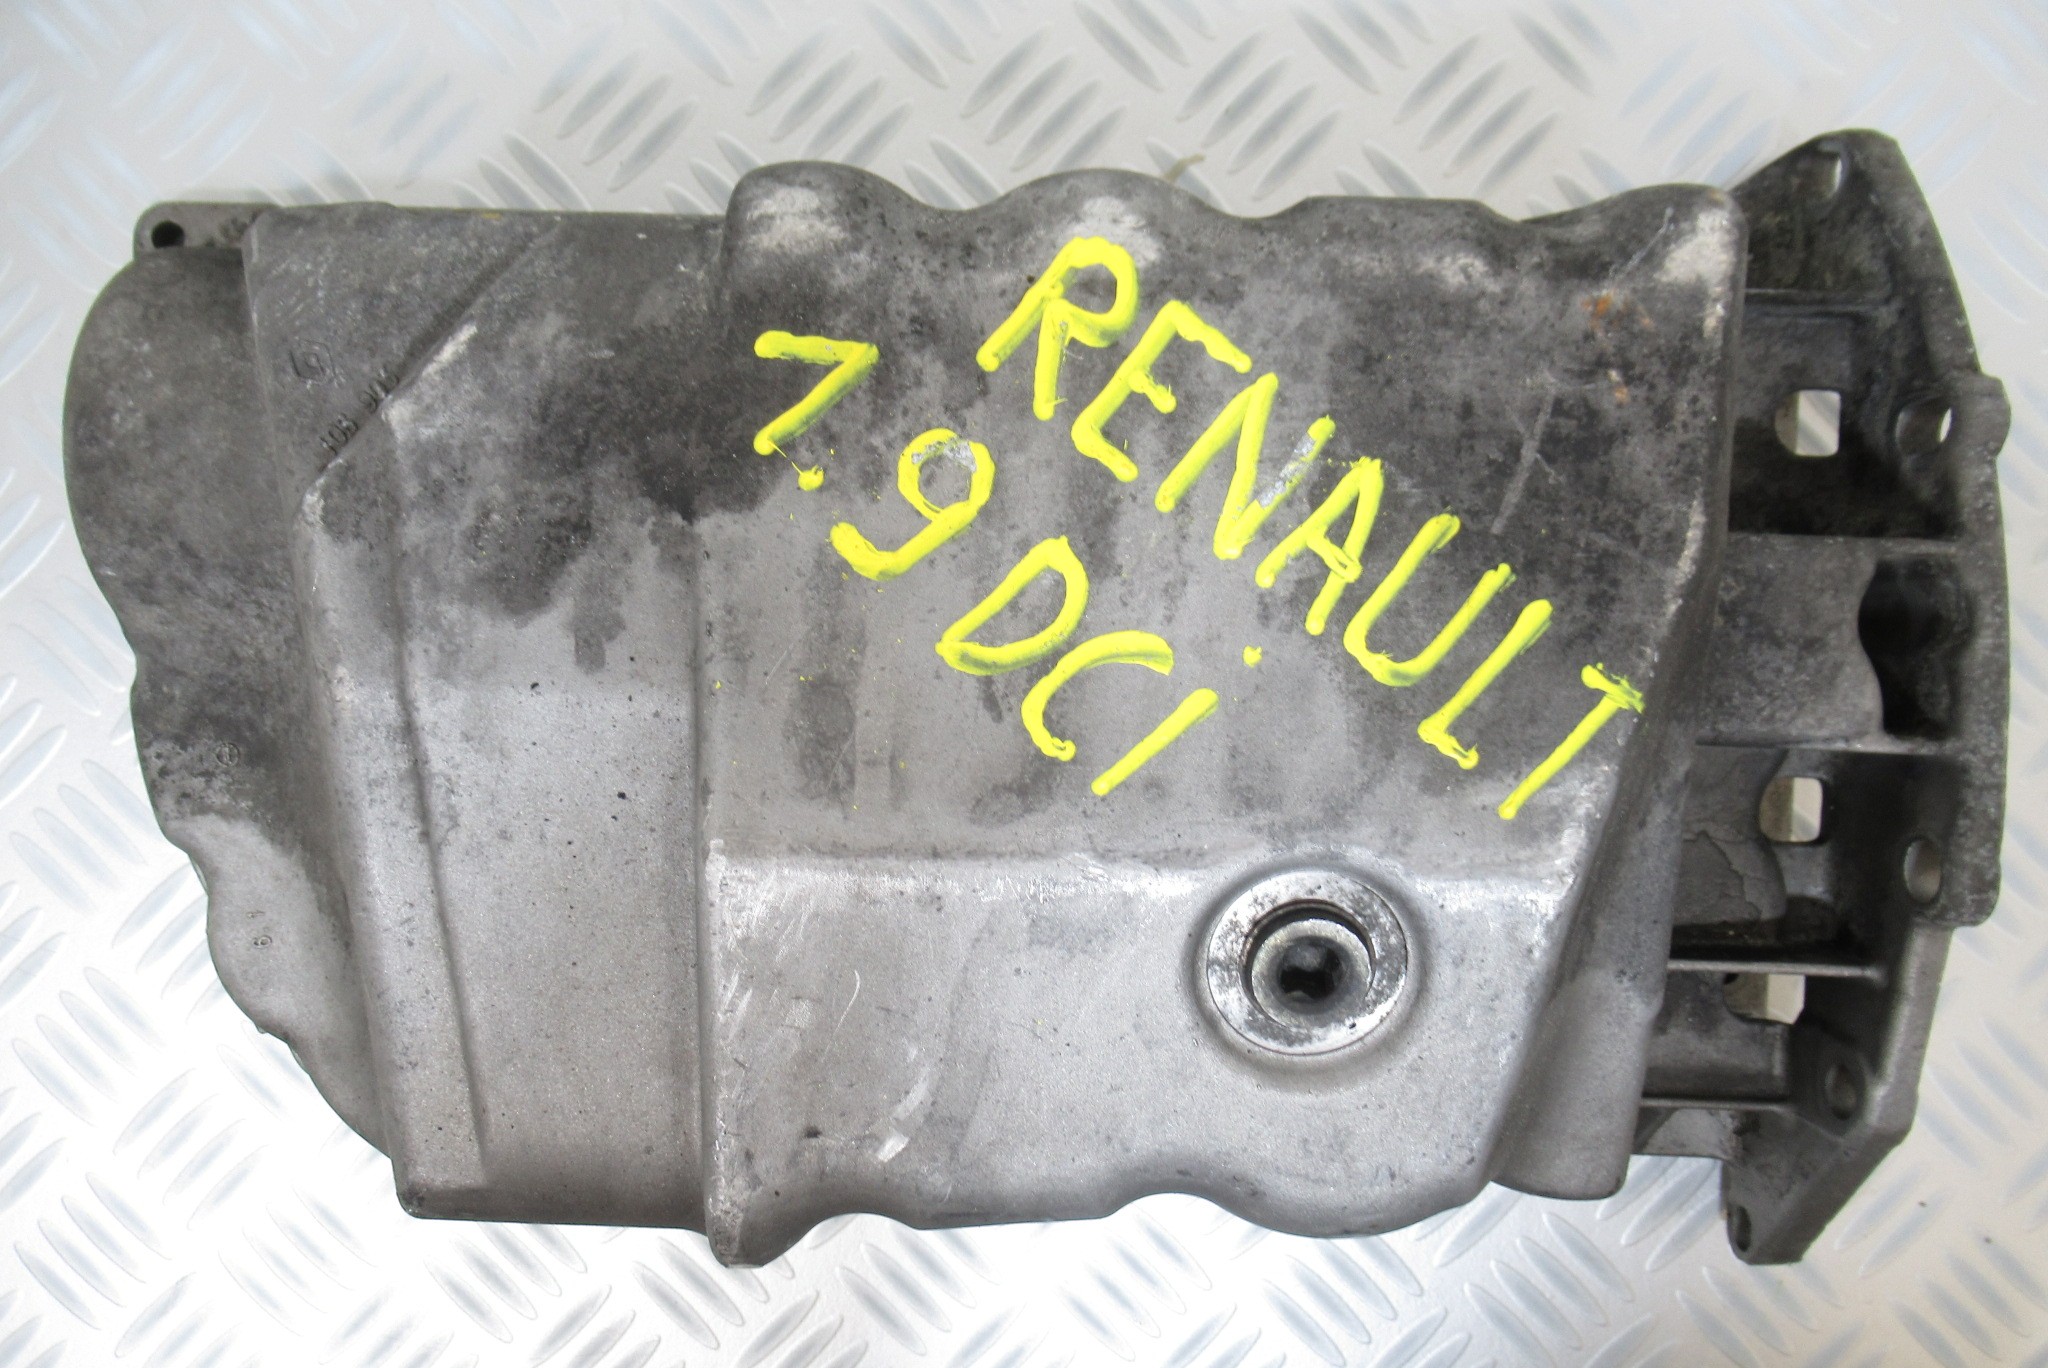 Carter d'huile moteur Renault Megane 1,9 DCI 770016903 – Recycl ...